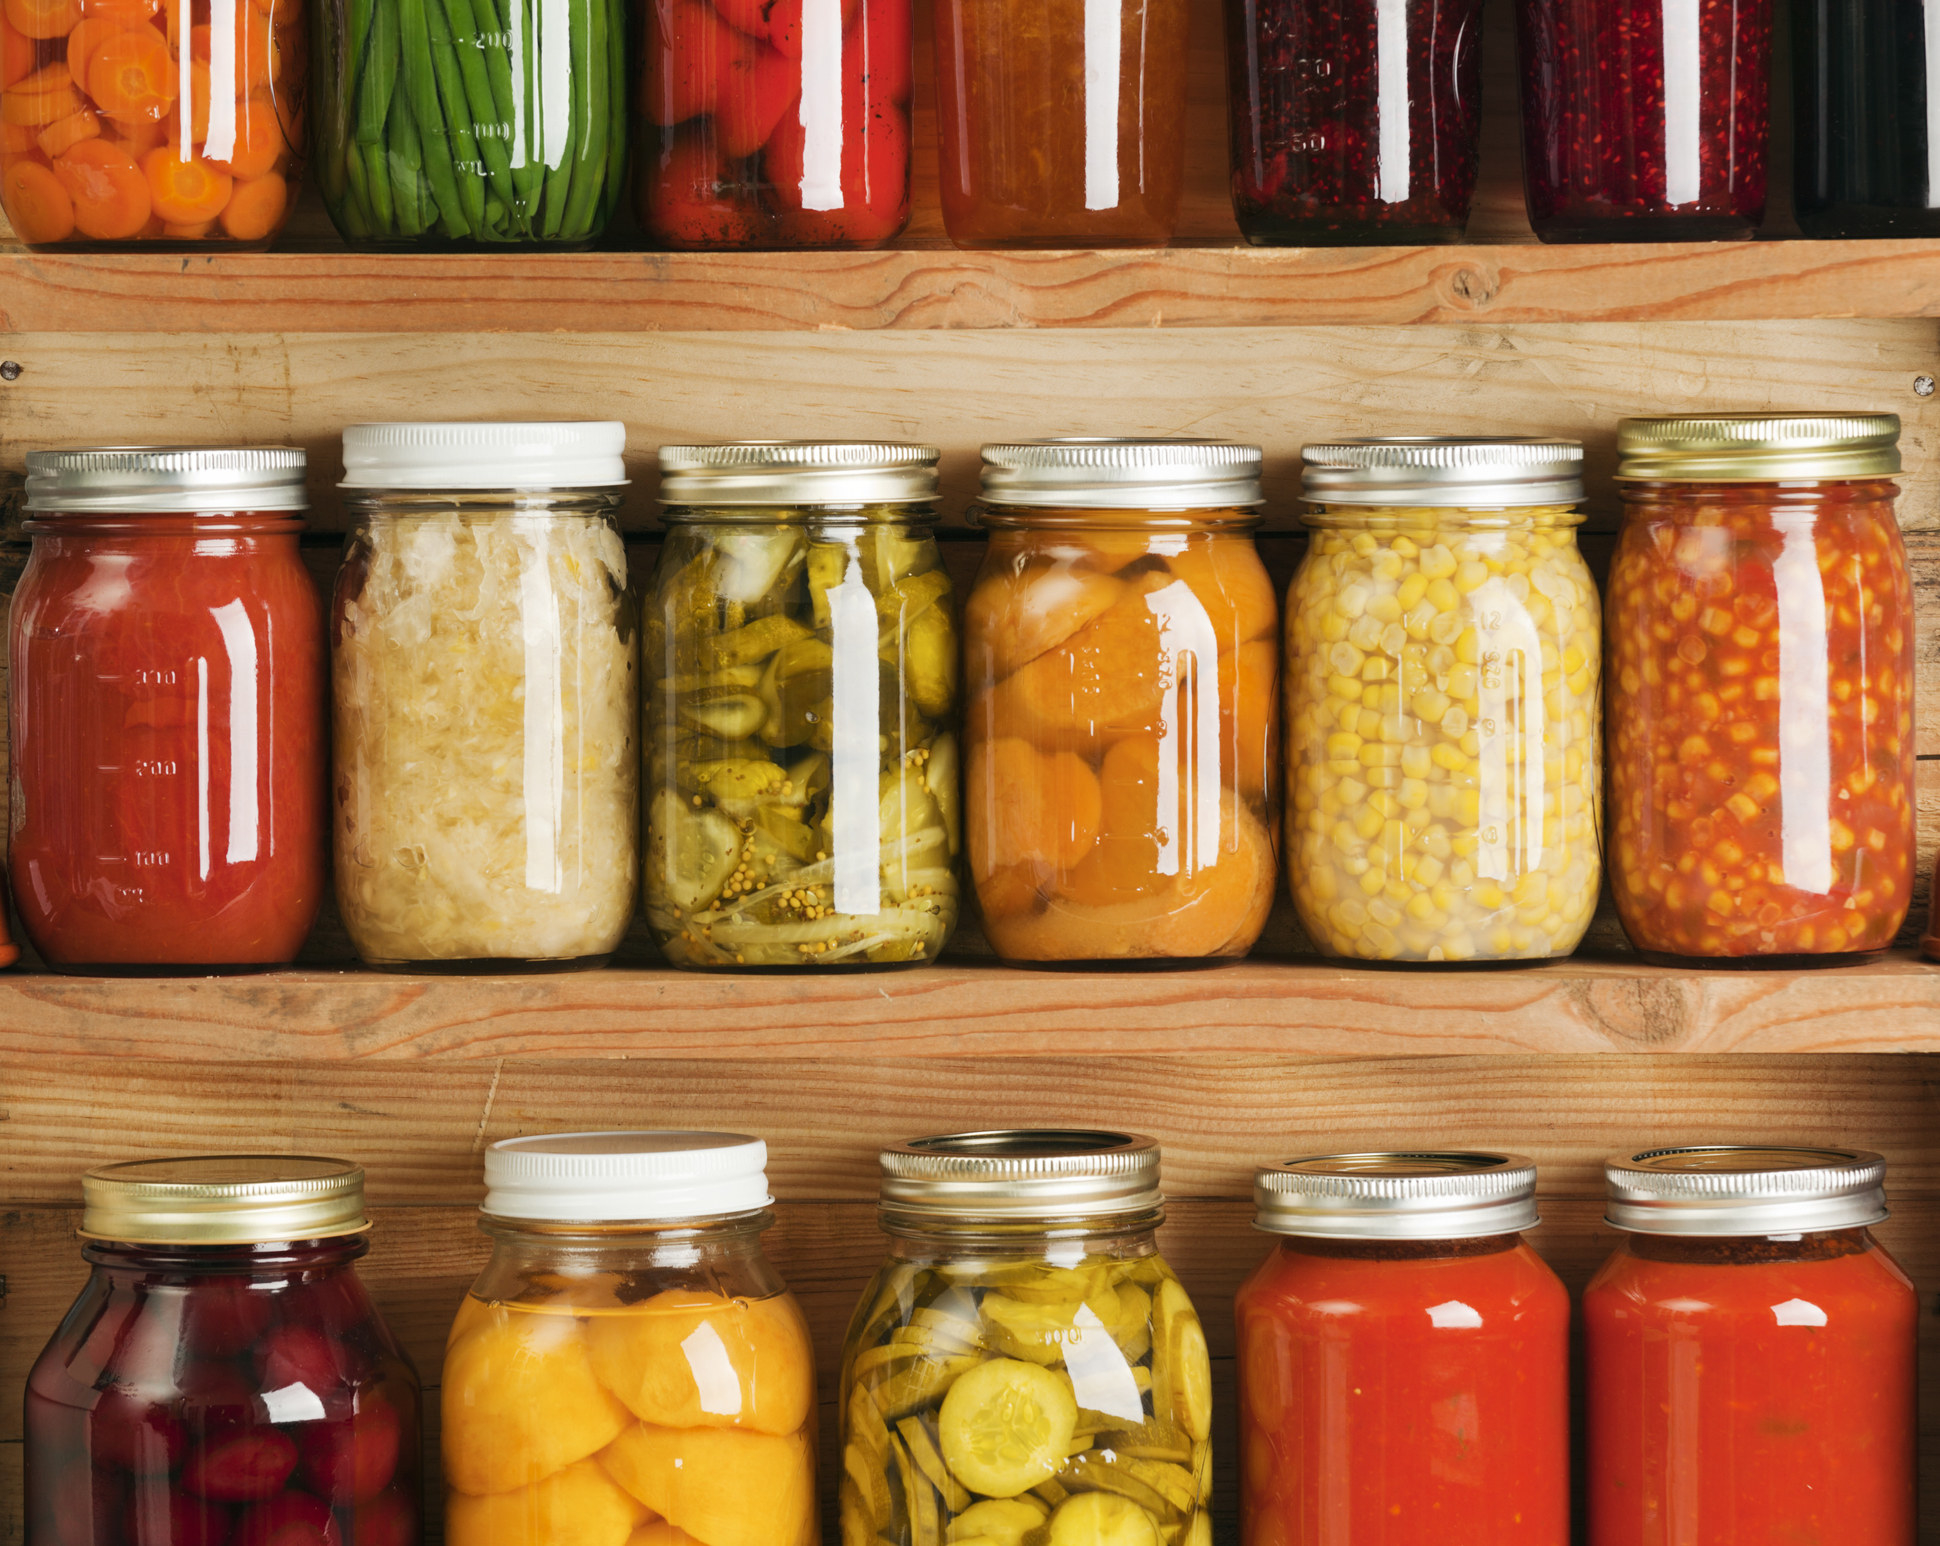 木制仓储货架控股国内罐头蔬菜和水果蜜饯。